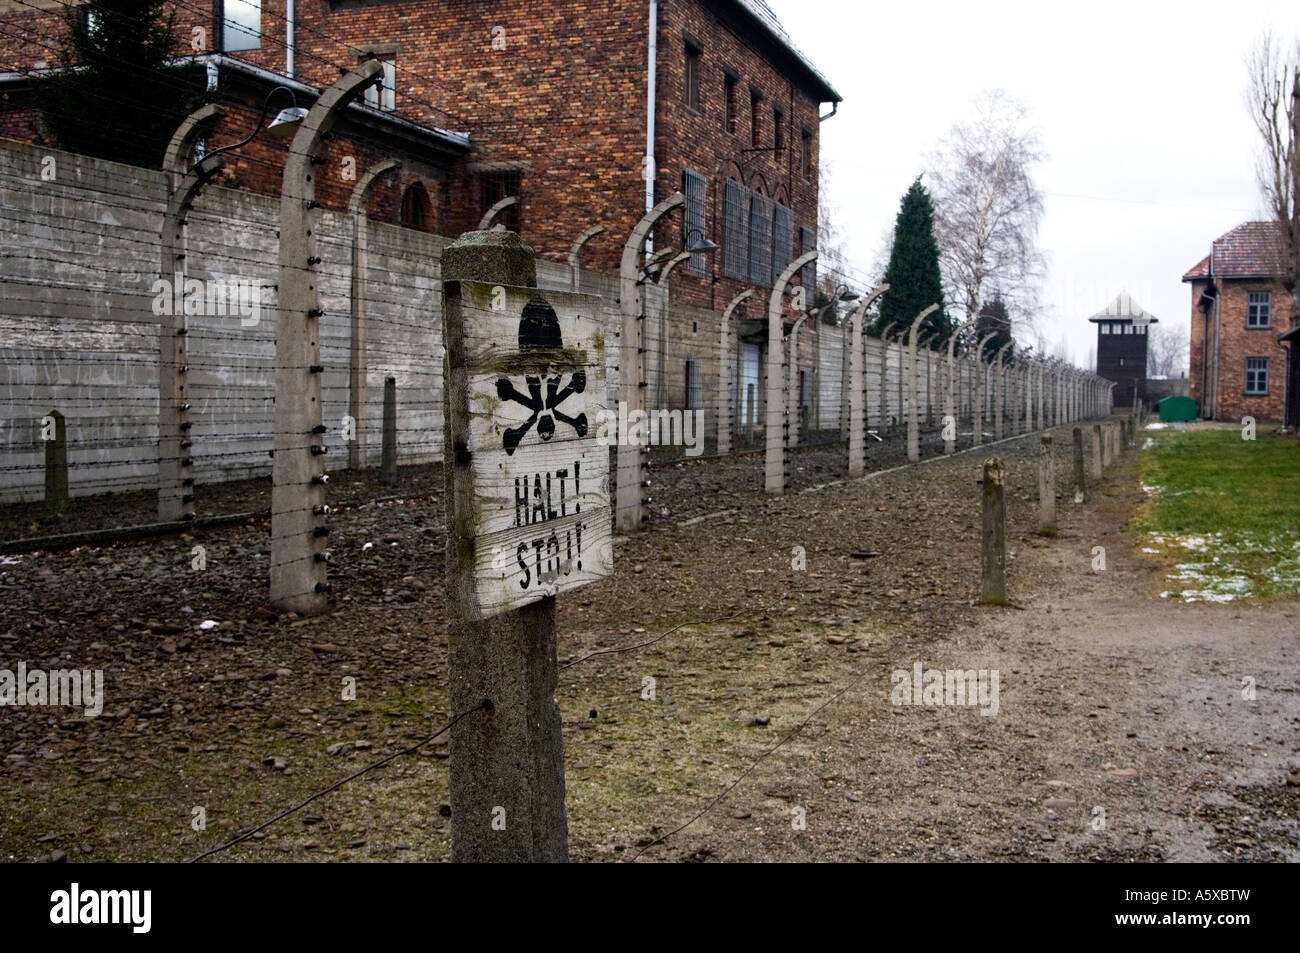 Filo spinato al campo di concentramento nazista di Auschwitz 1 vicino a Cracovia in Polonia Foto Stock